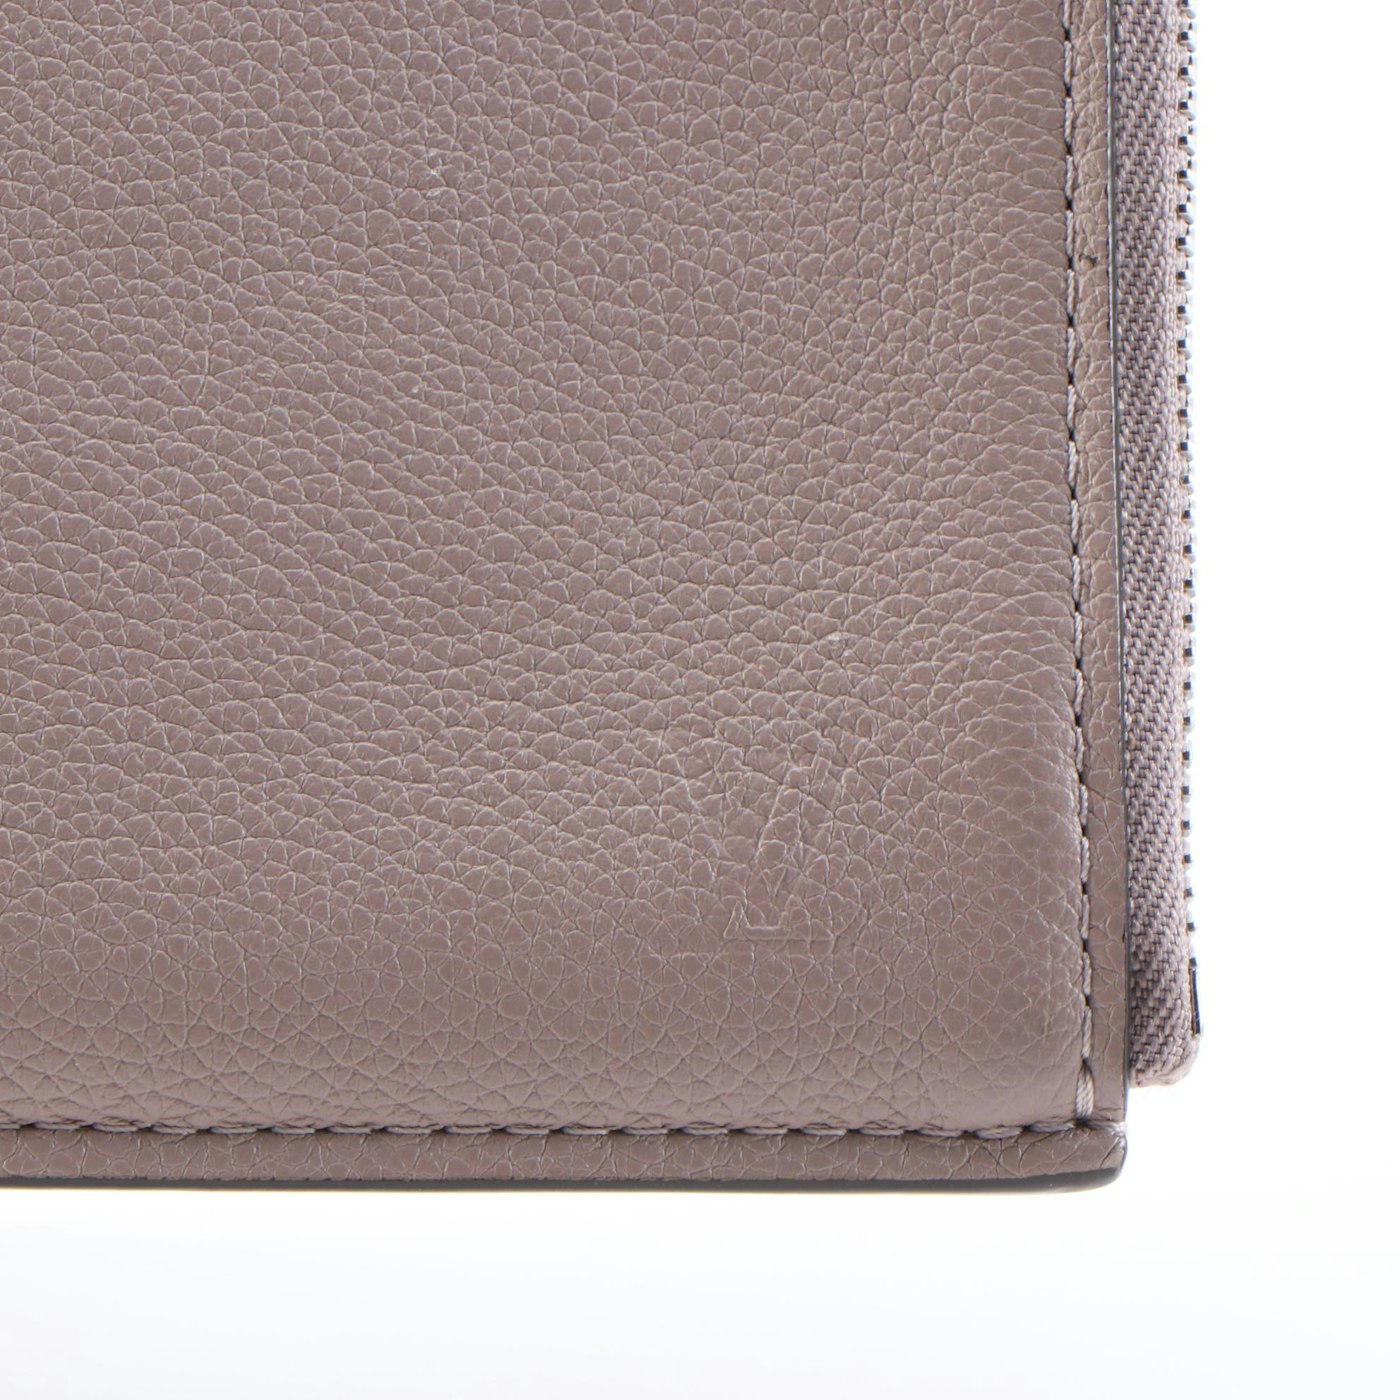 Louis Vuitton Zip Around Pochette Jour PM in Calfskin Leather | EBTH